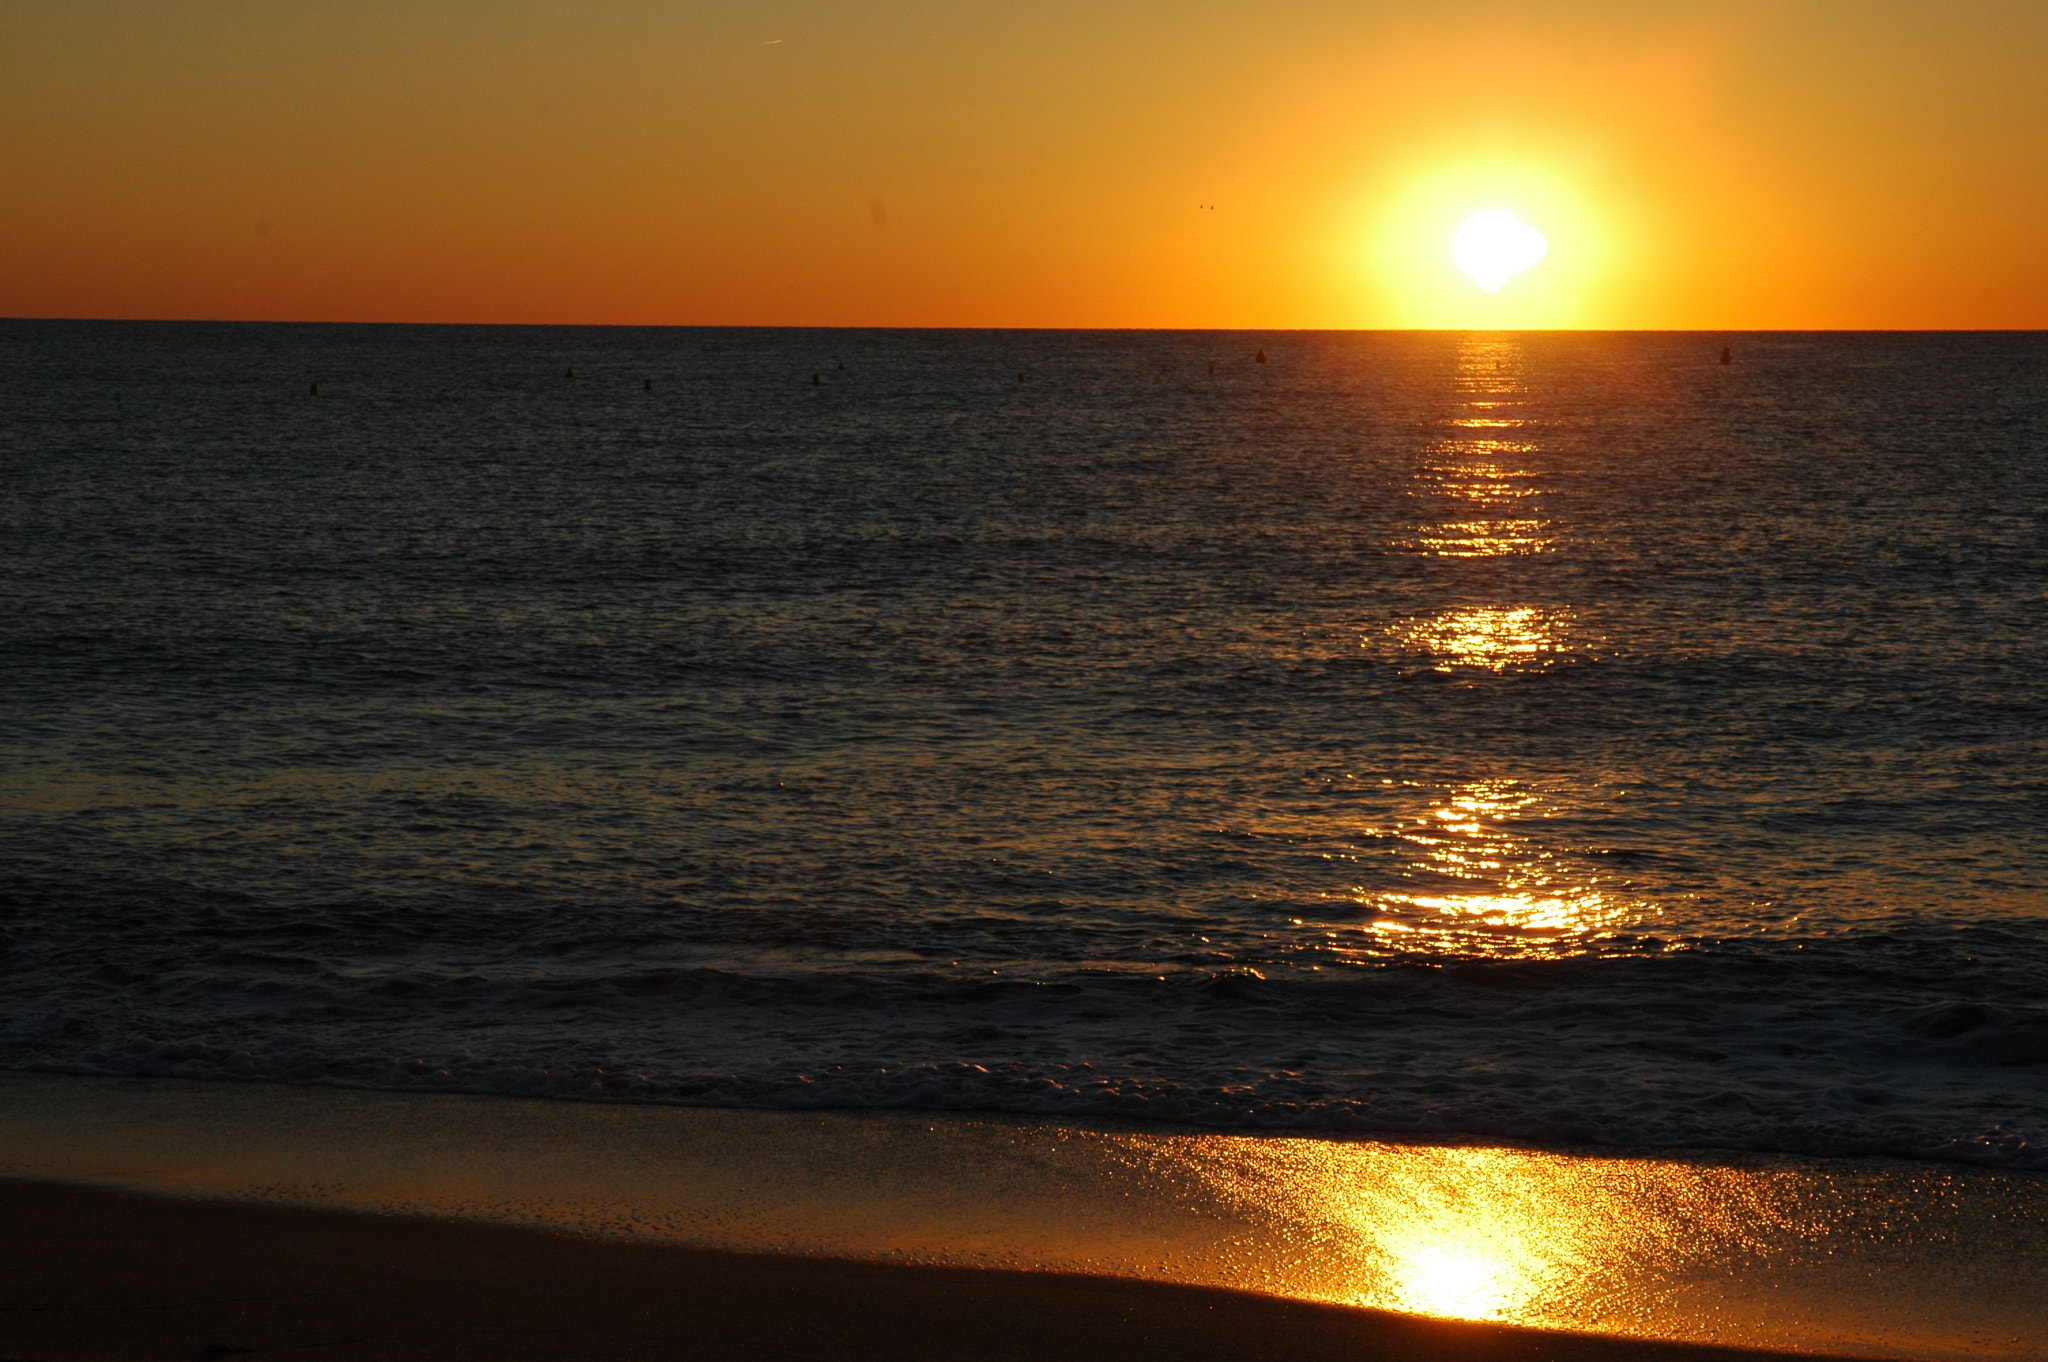 Nikon D70 sample photo. Un nouveau jour se lève et les reflets du soleil brillent sur la mer photography